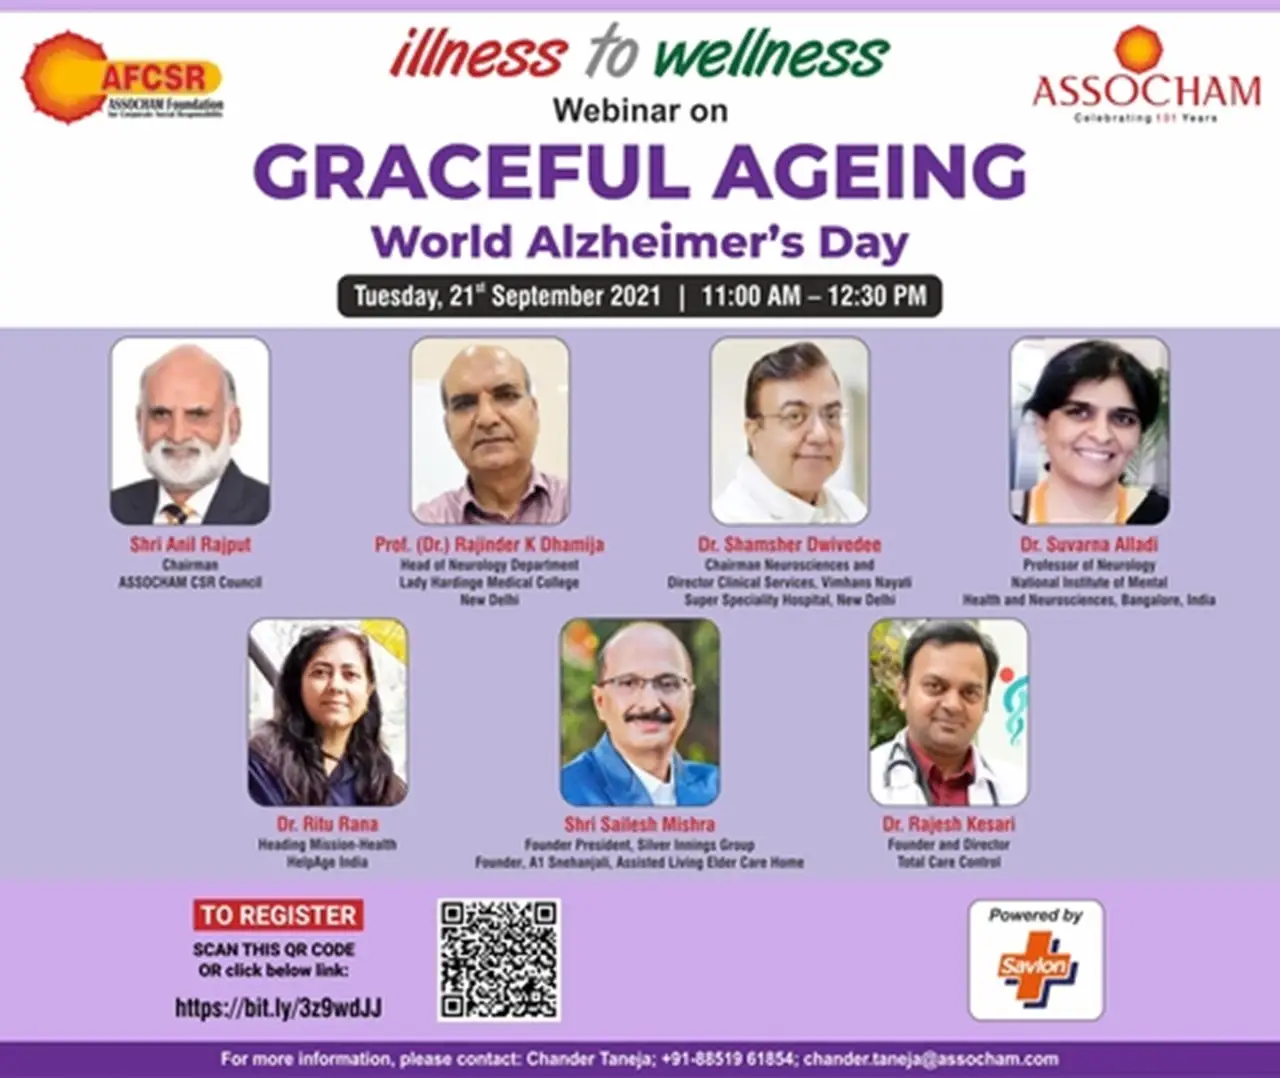 Webinar on “Graceful Ageing” on World Alzheimer's Day